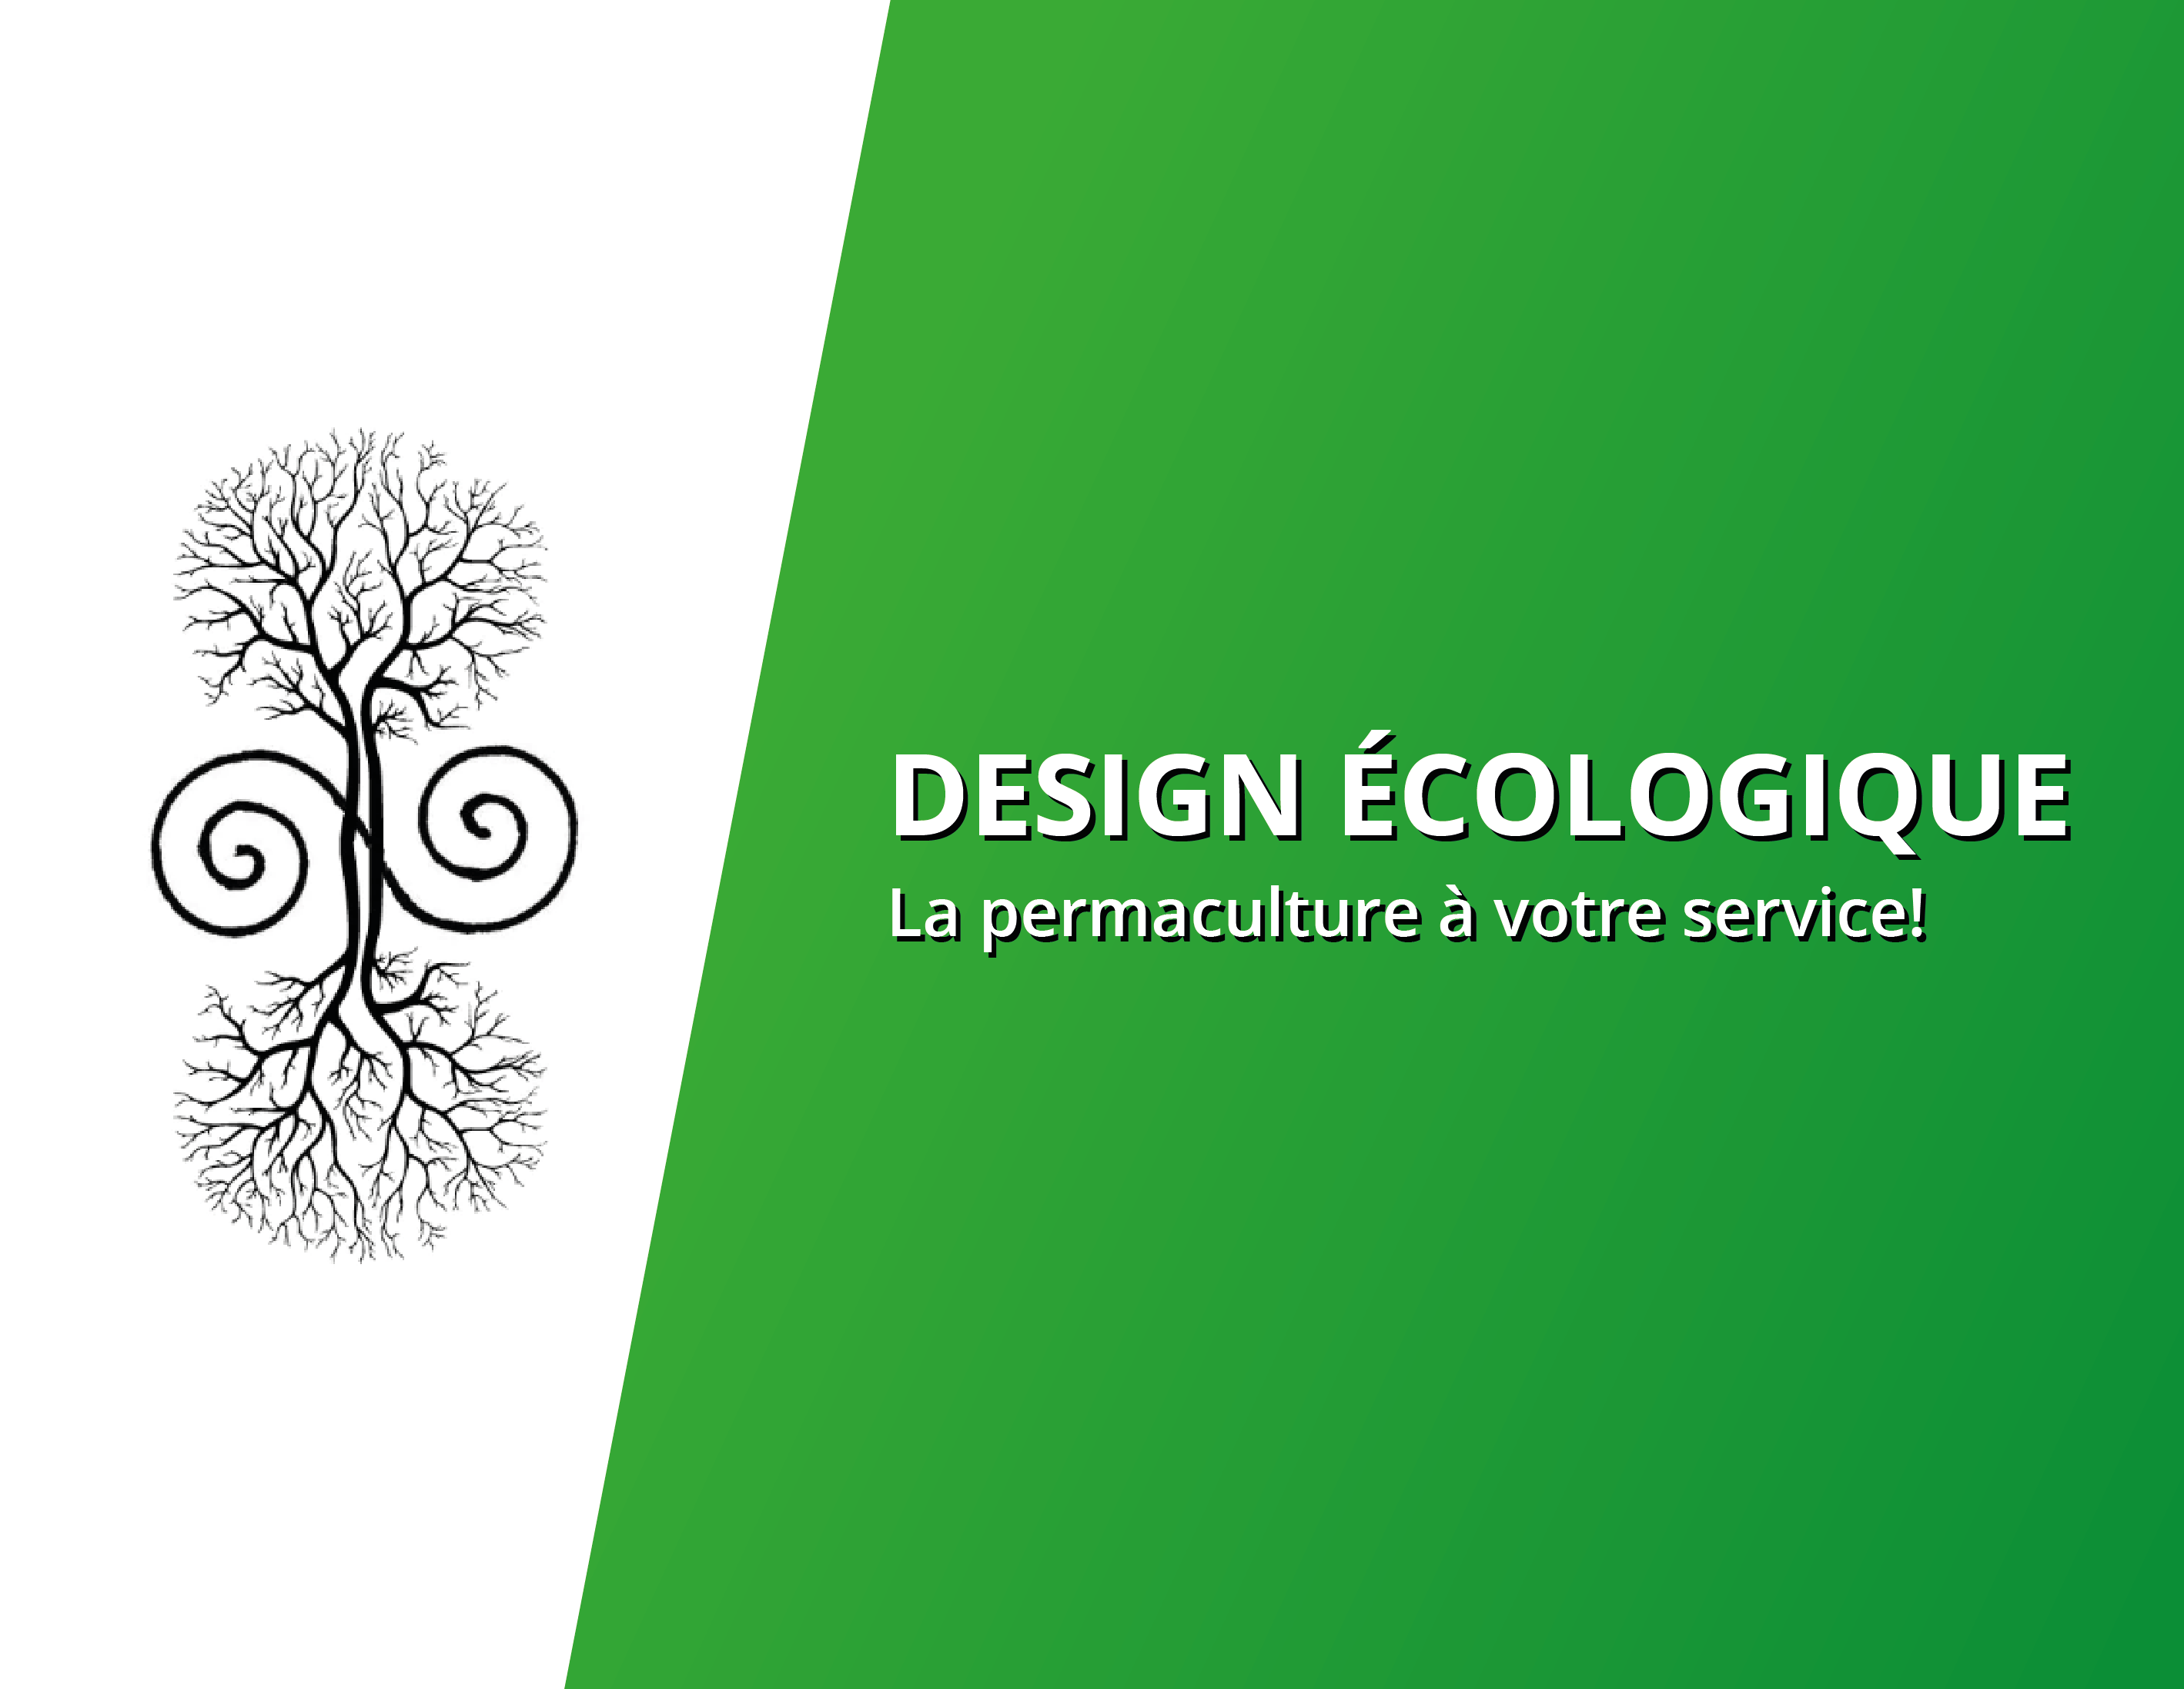 Design Ecologique